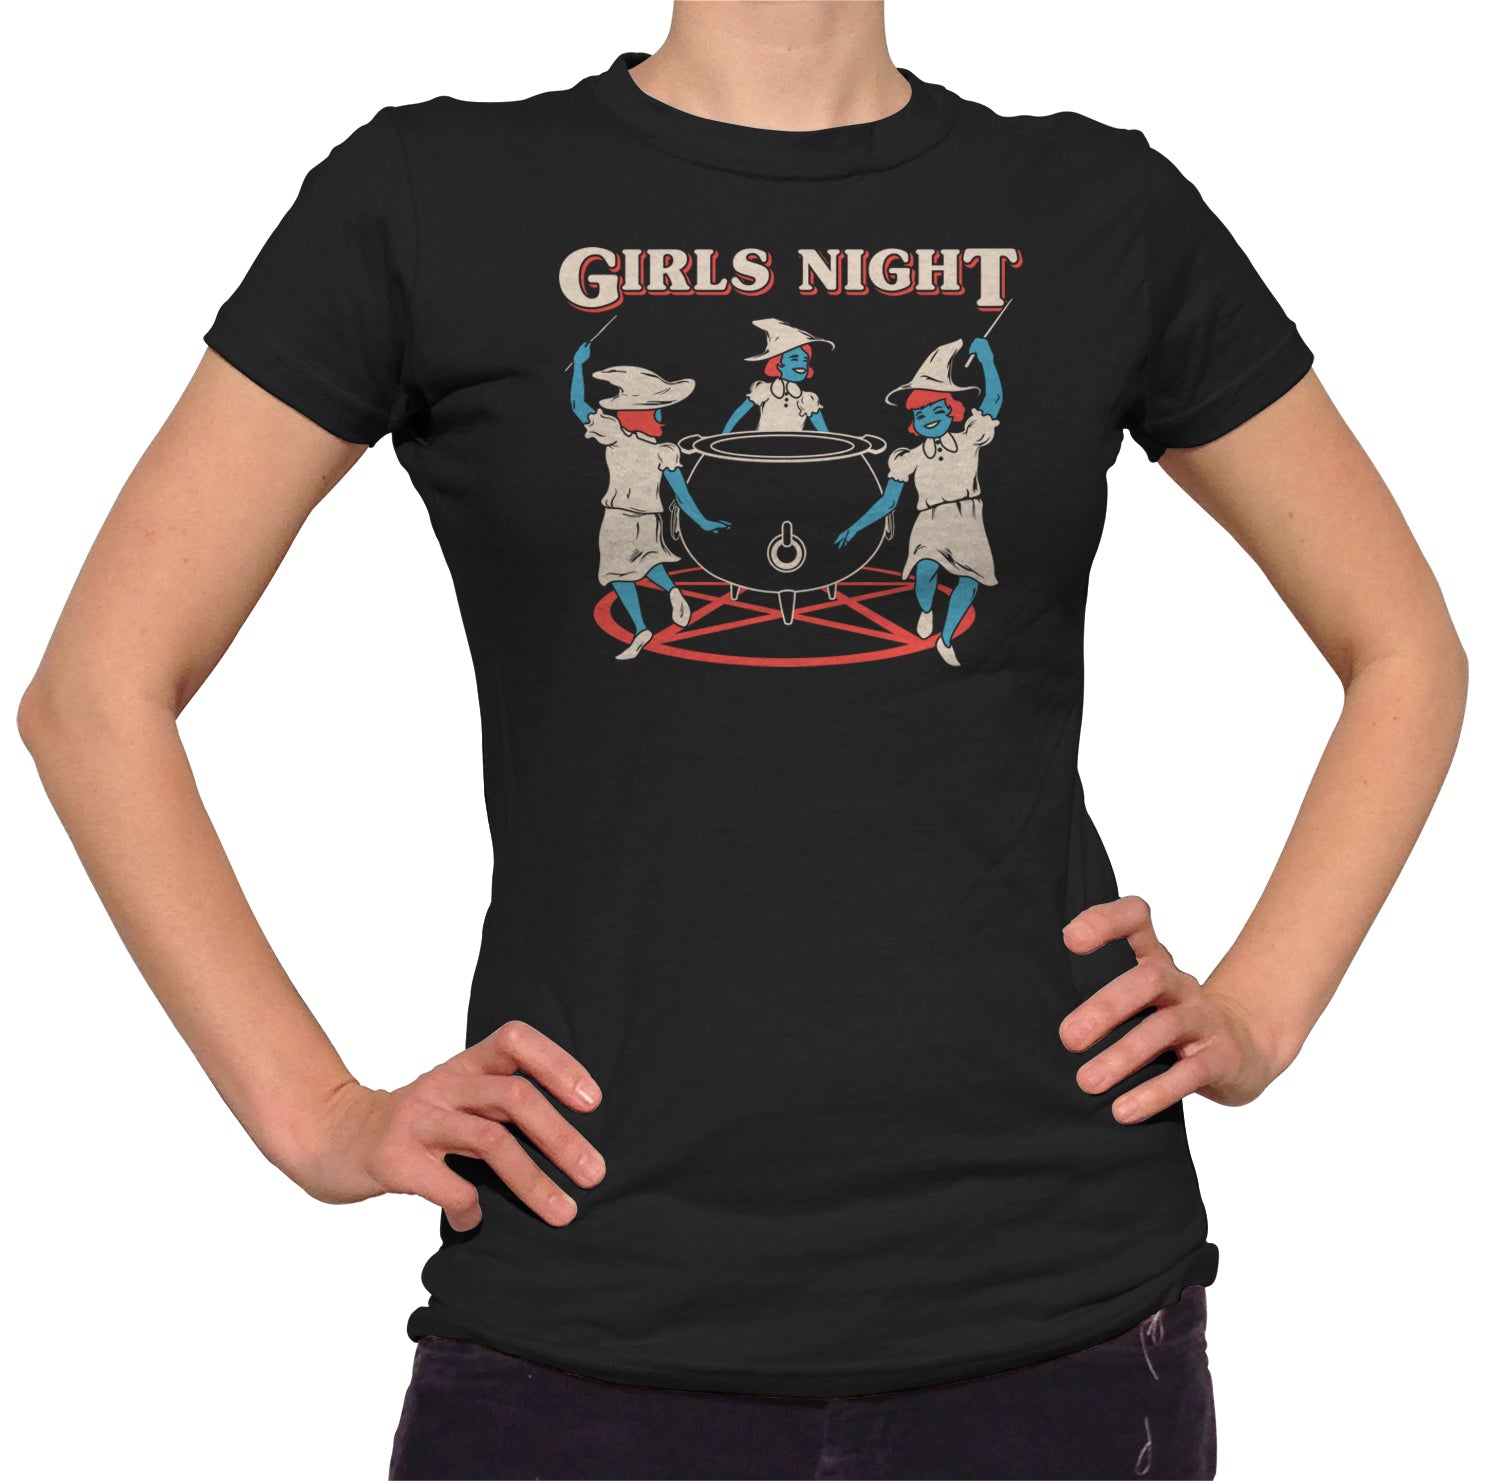 Women's Girls Night Witches T-Shirt